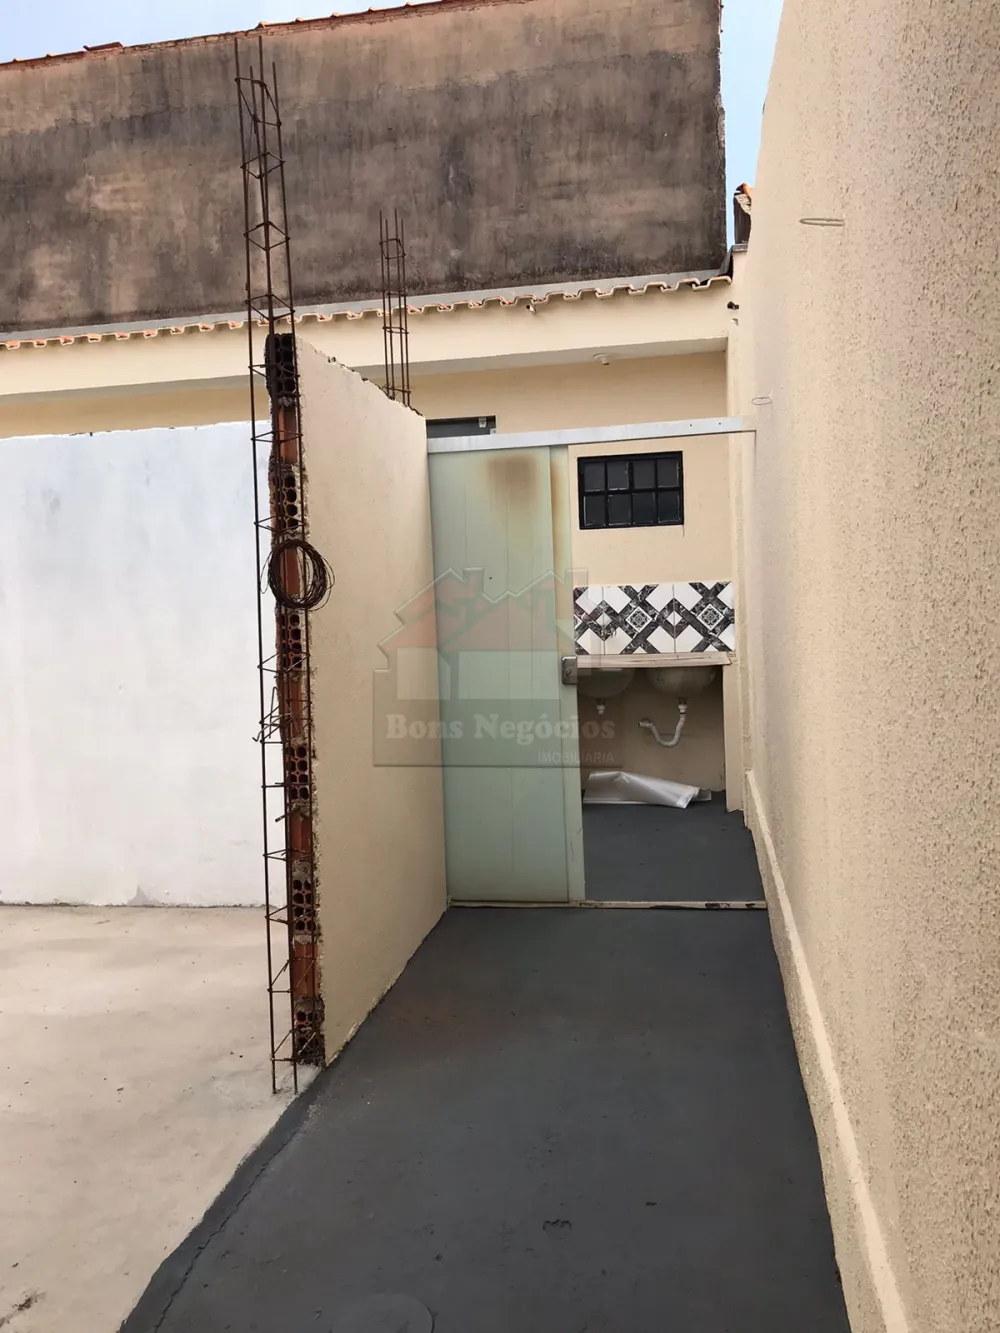 Comprar Casa / Padrão em Ribeirão Preto R$ 230.000,00 - Foto 6